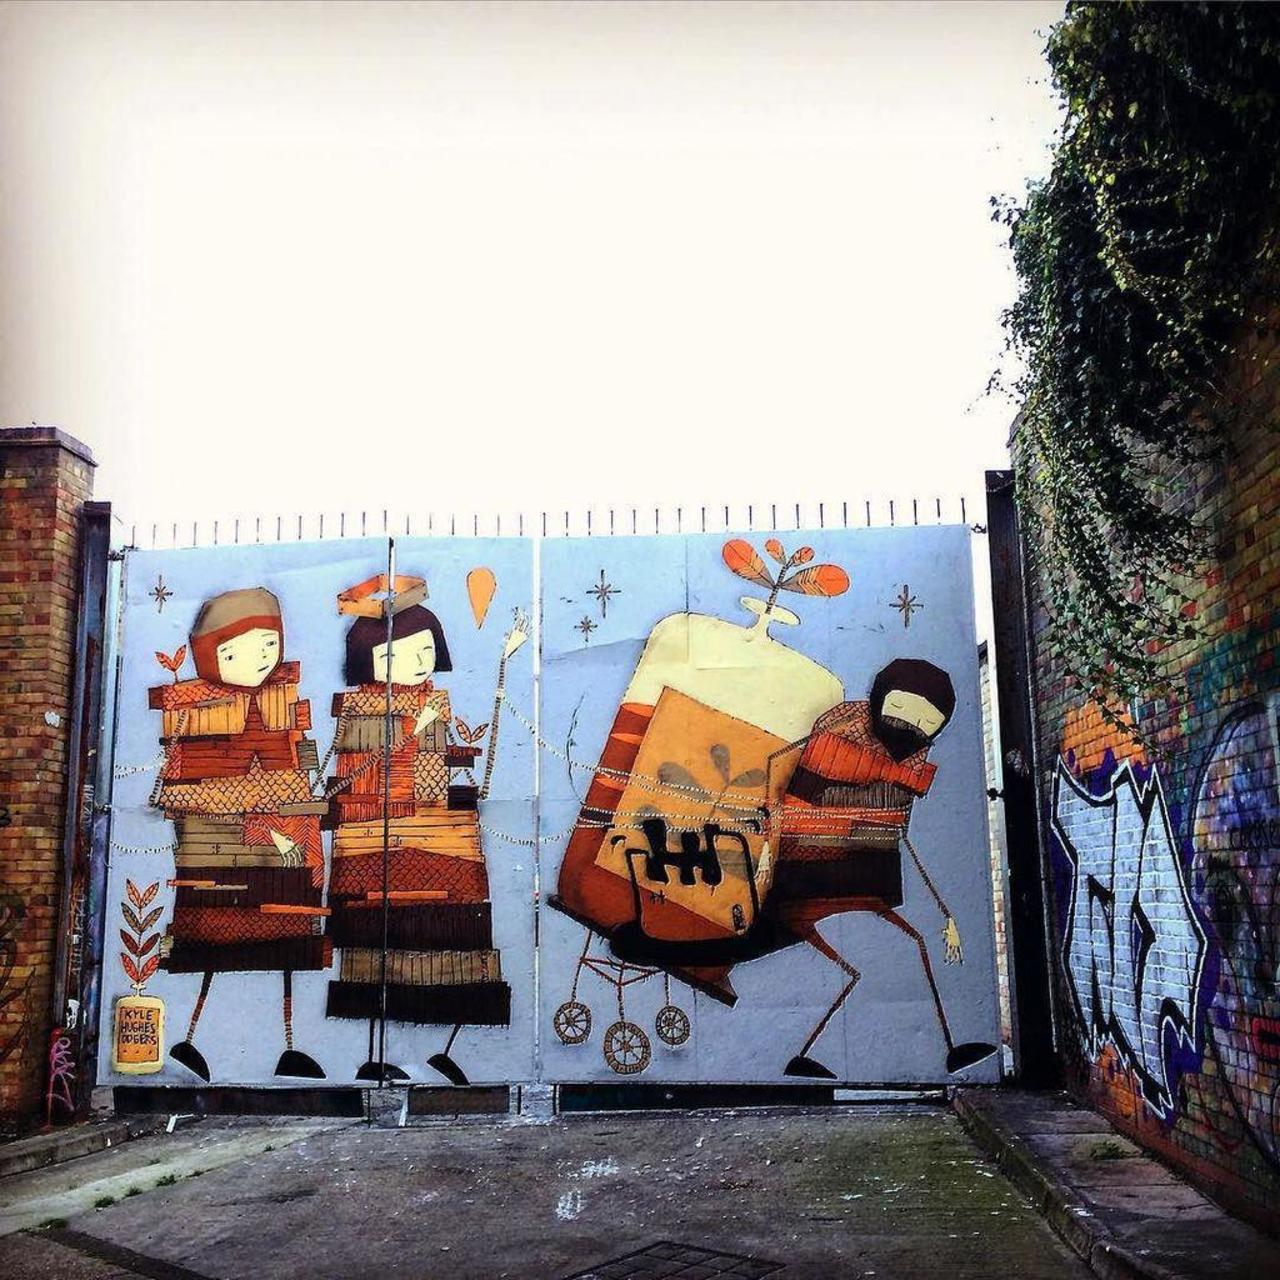 #graffitiporn  #wallporn #mural  #murales  #graffitiporn #lovestreetart #streetart #graffiti #london #loveshoreditc… http://t.co/3wzTOX3wZD